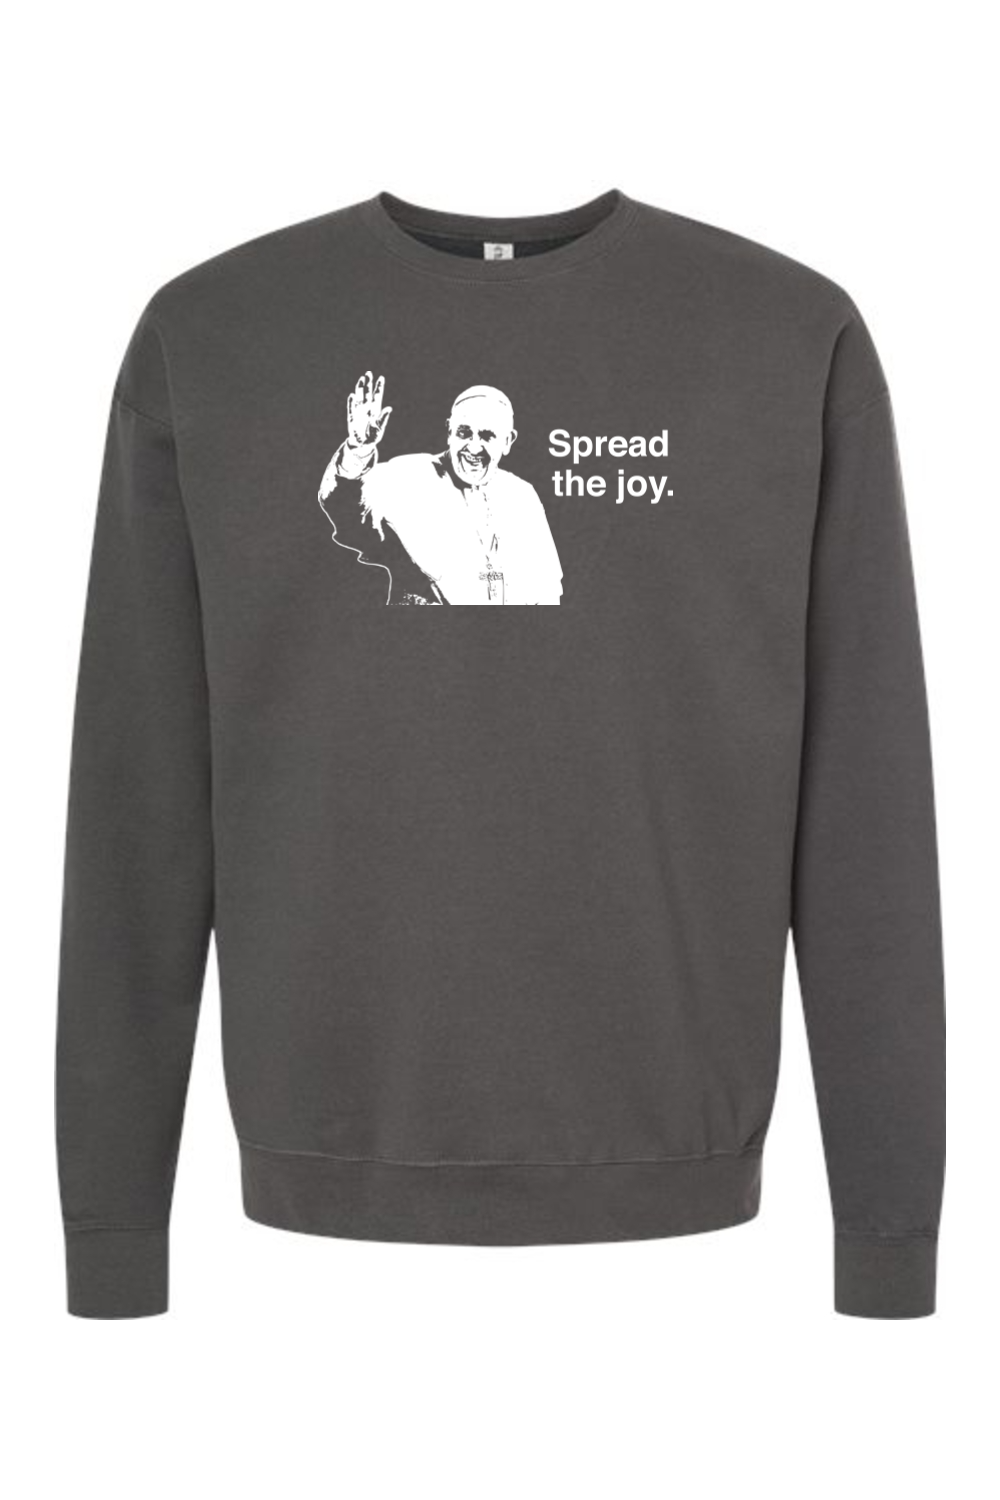 Spread the Joy - Pope Francis Crewneck Sweatshirt